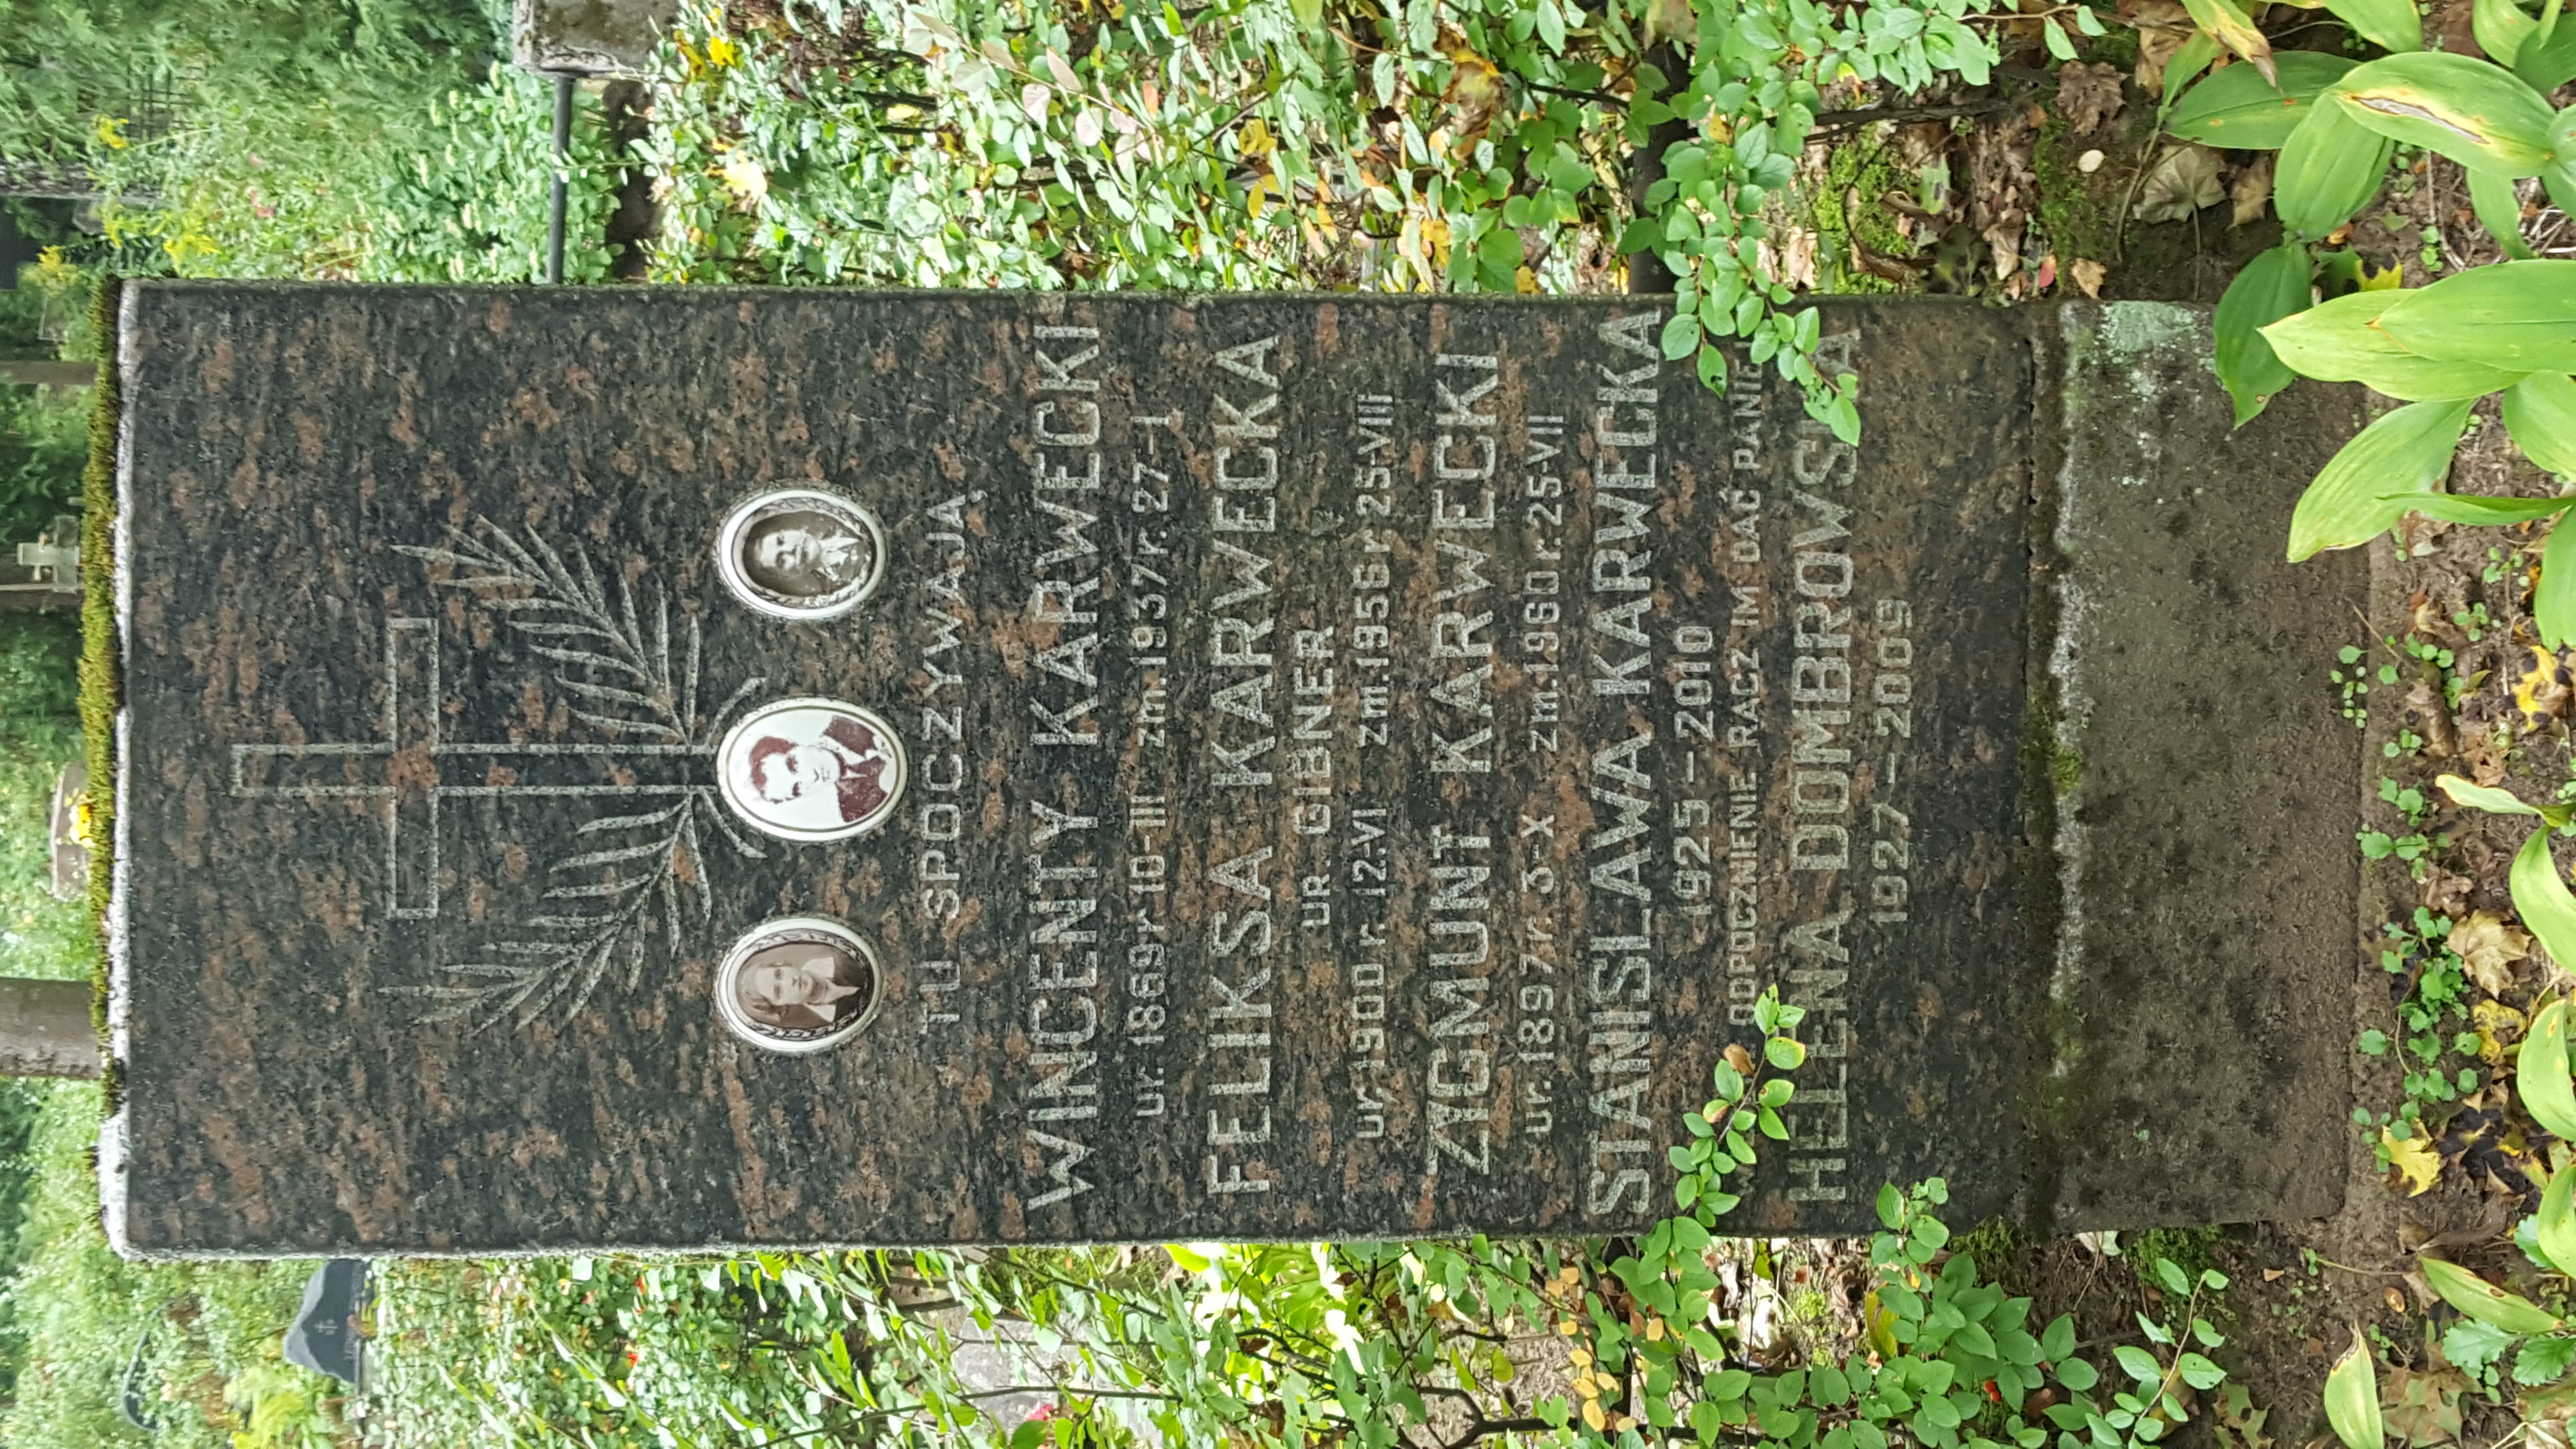 Nagrobek rodziny Karweckich i Helēny Dombrowskiej, cmentarz św. Michała w Rydze, stan z 2021 r.